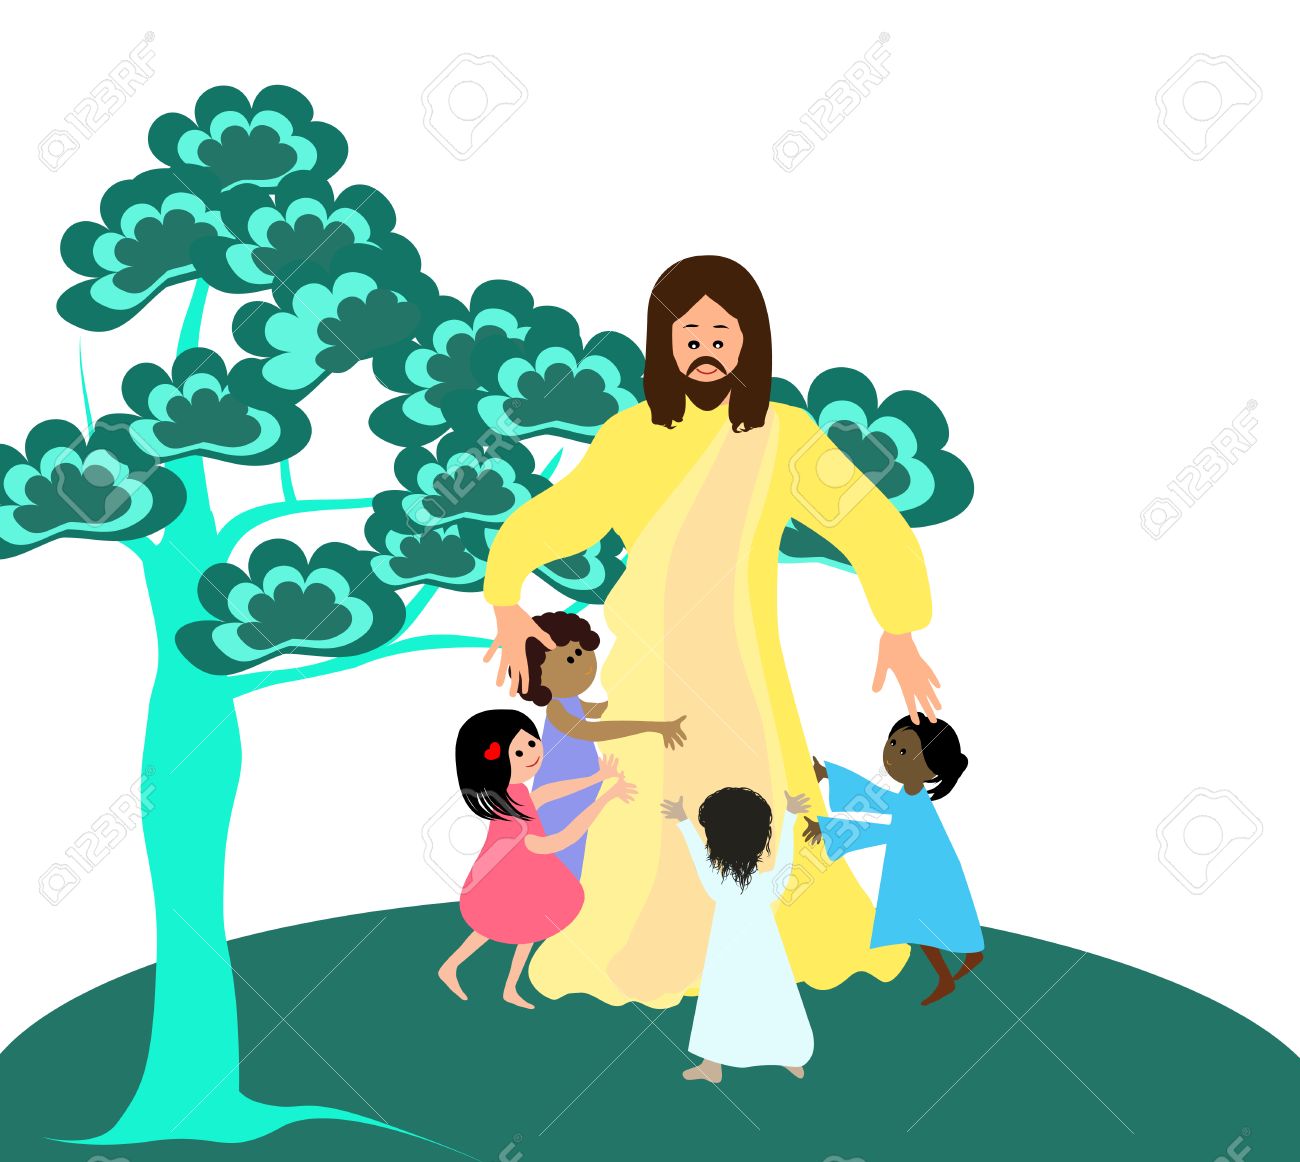 Jesus loves the little children.